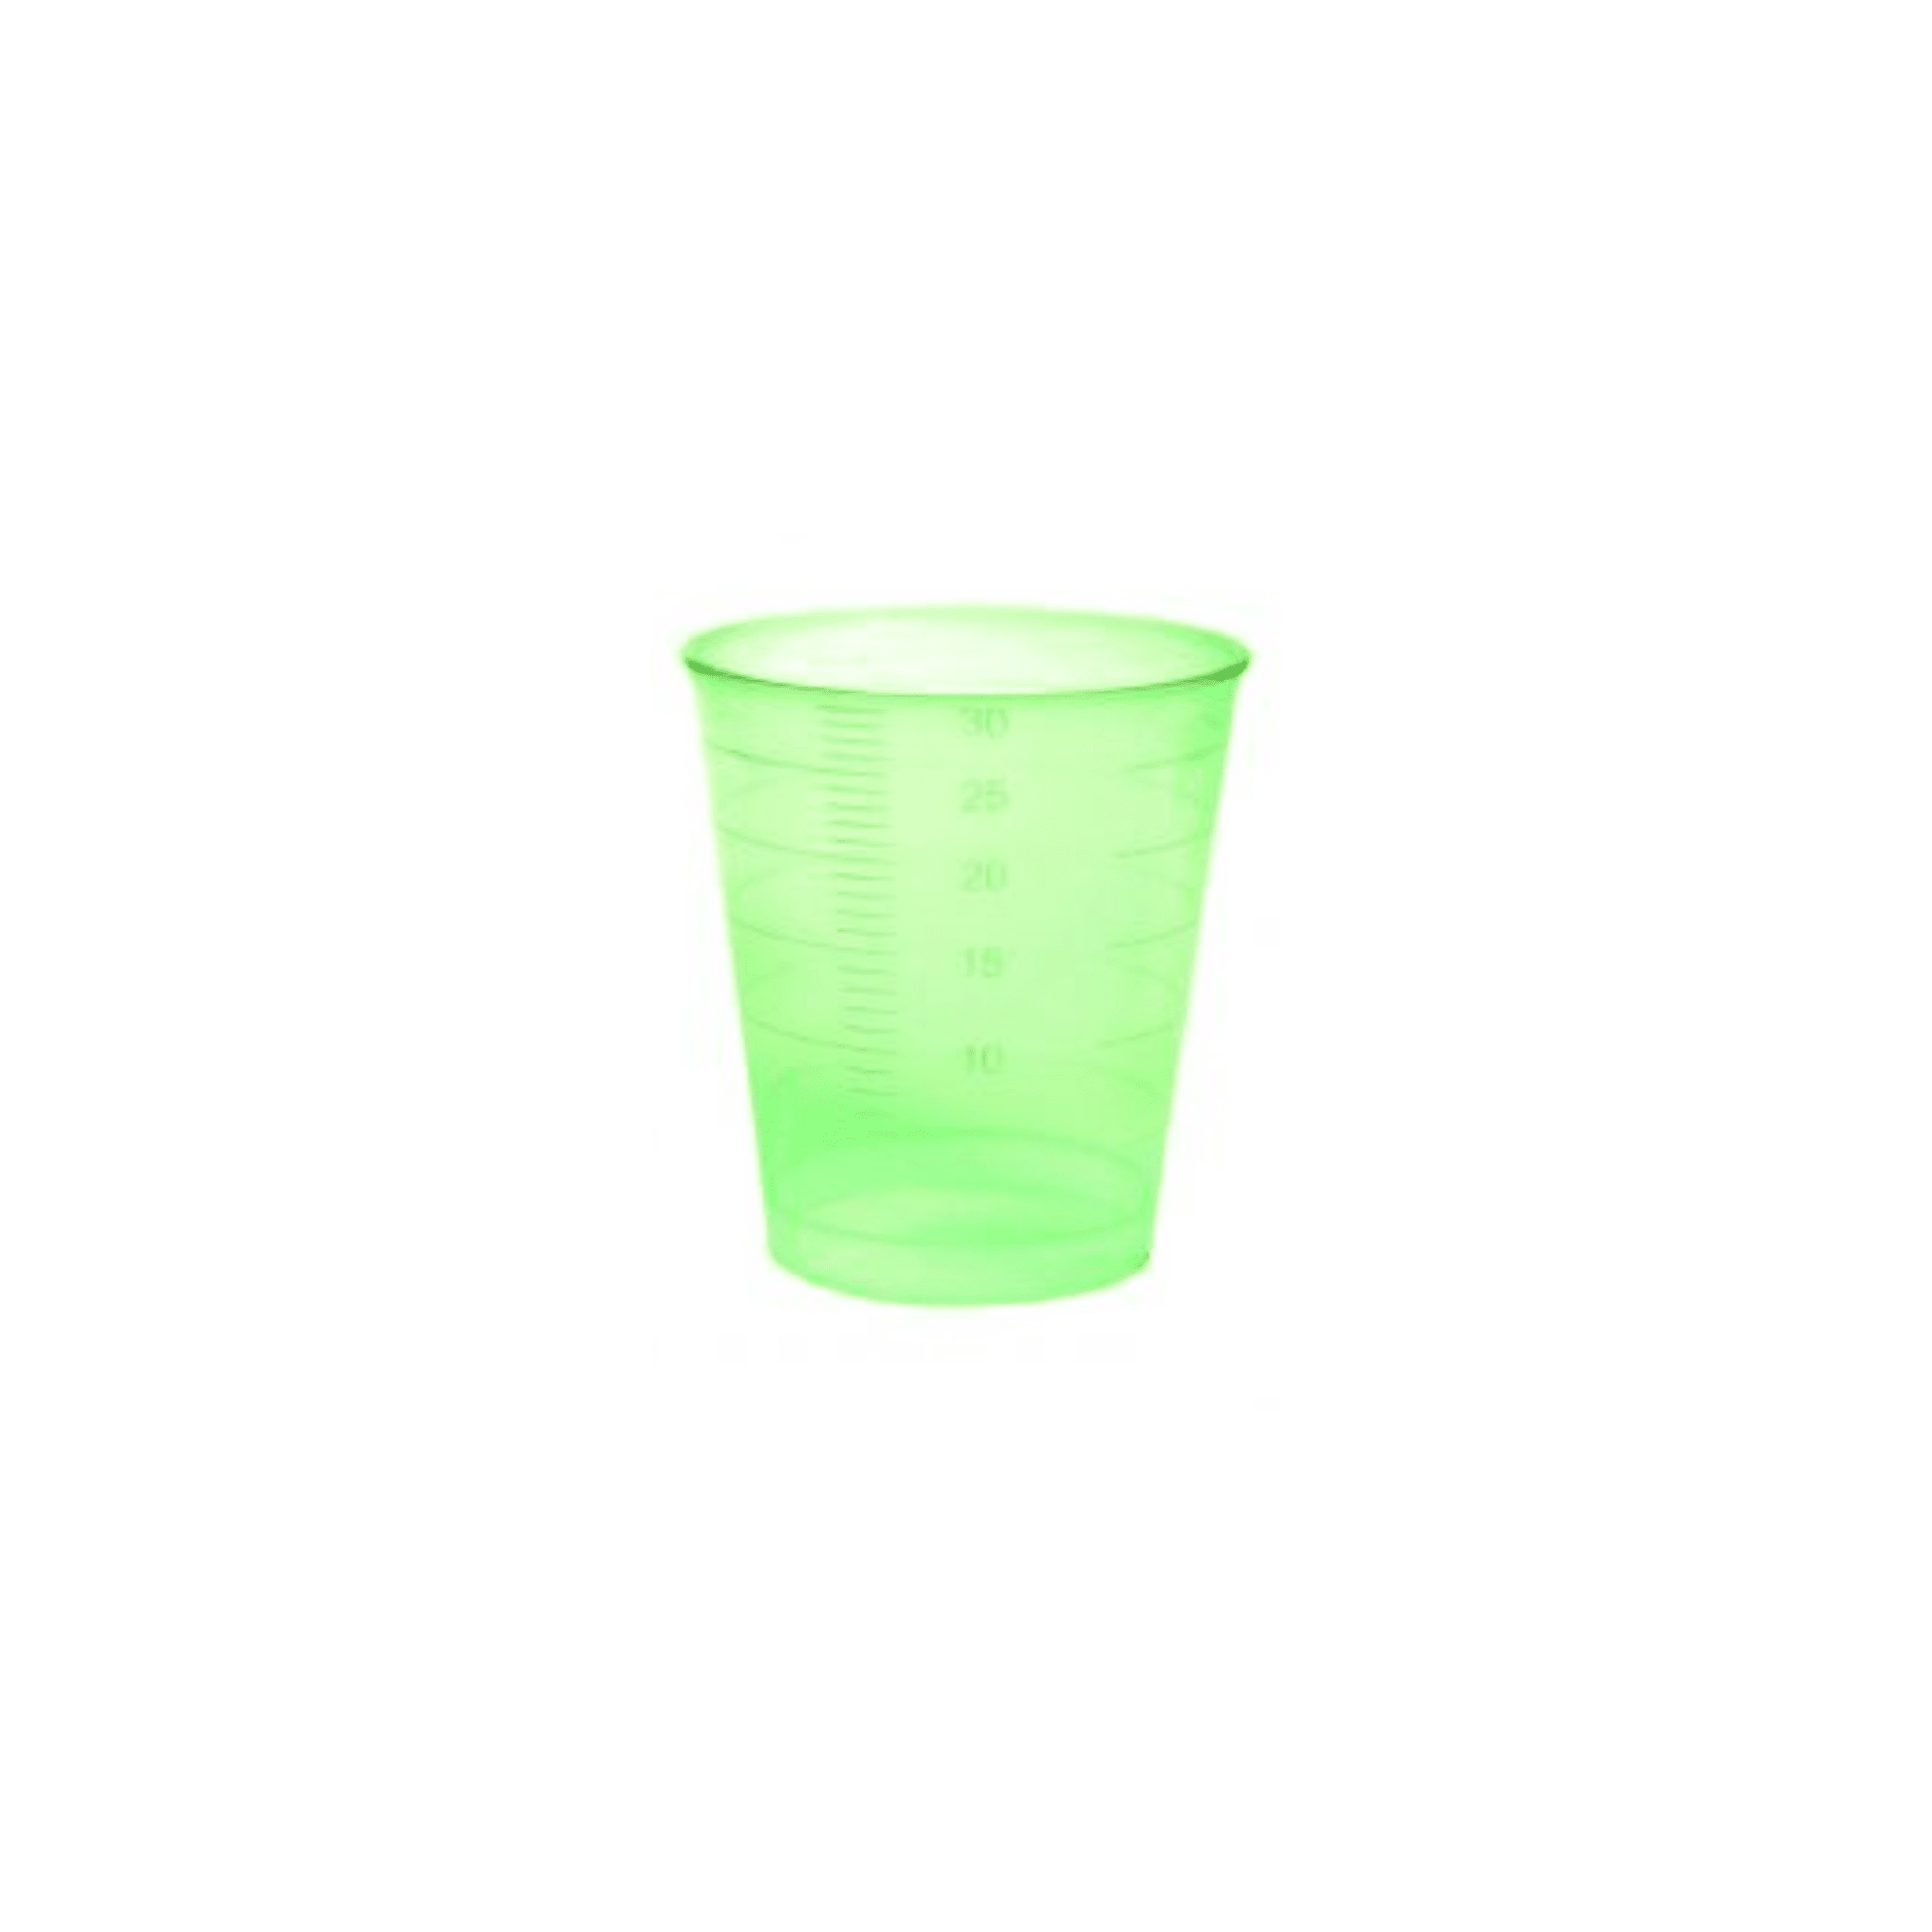 Ein durchscheinender grüner Einmal-Medizinbecher aus Kunststoff von Meditrade GmbH, 30 ml, graduiert mit Messmarkierungen auf der Oberfläche, isoliert auf einem weißen Hintergrund.